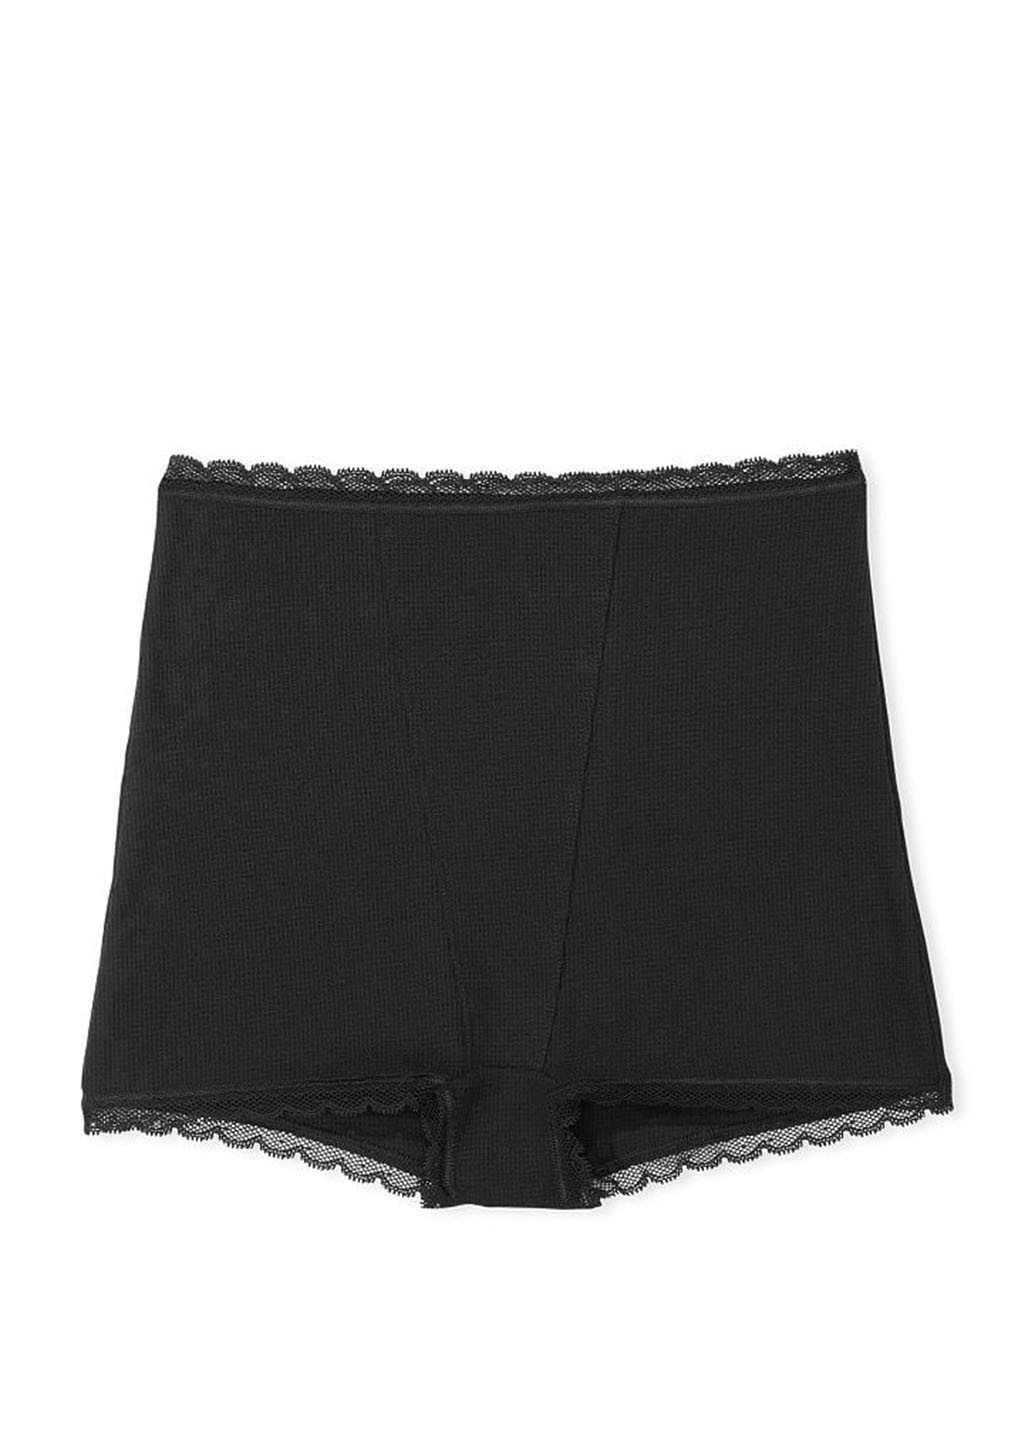 Трусики Victoria's Secret трусики-шорты однотонные чёрные домашние полиэстер, трикотаж